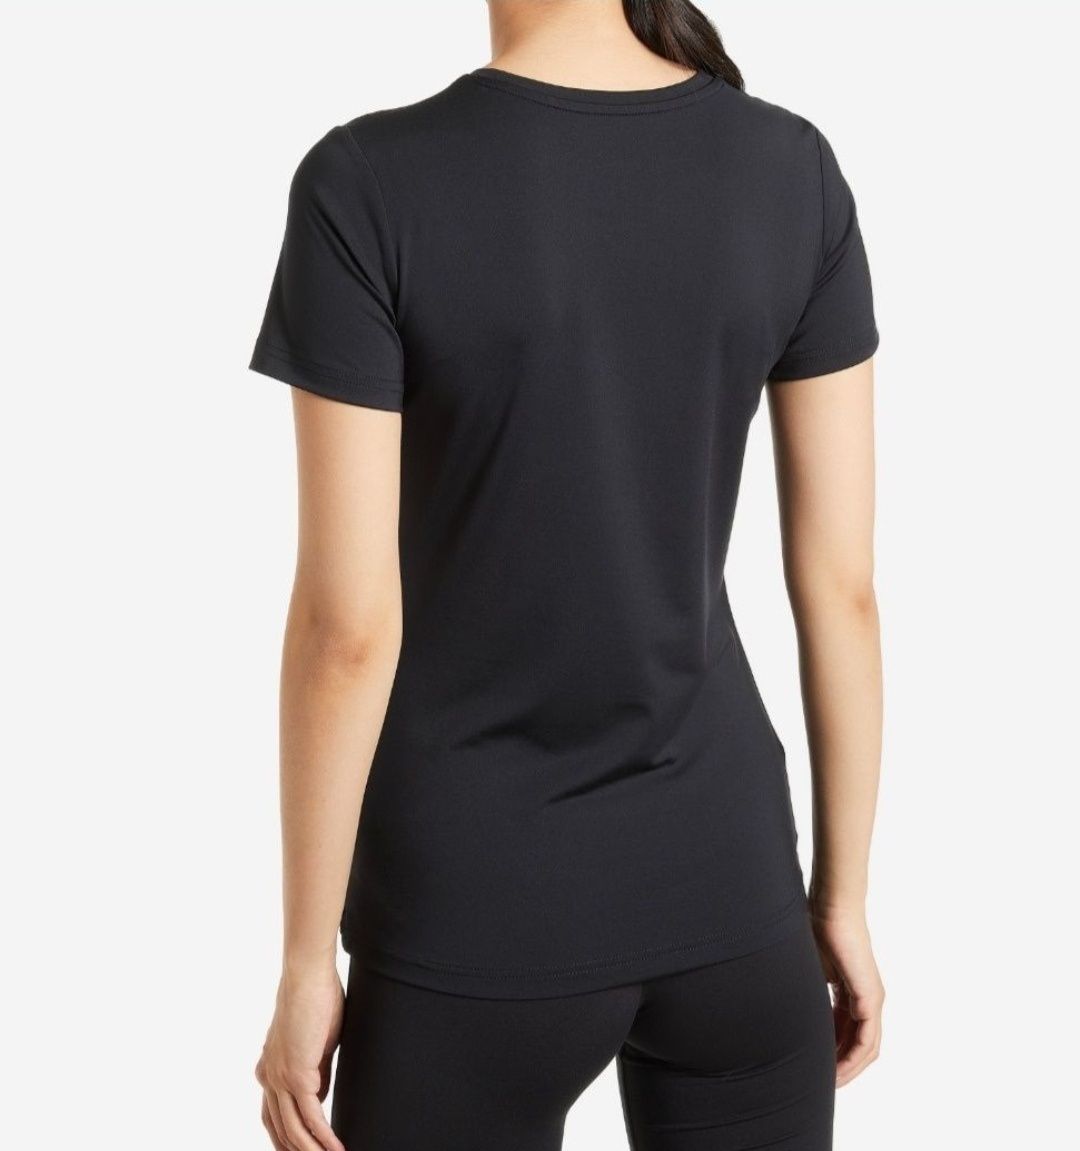 Нова спортивна бігова футболка чорна для фітнесу Demix slim fit сілует